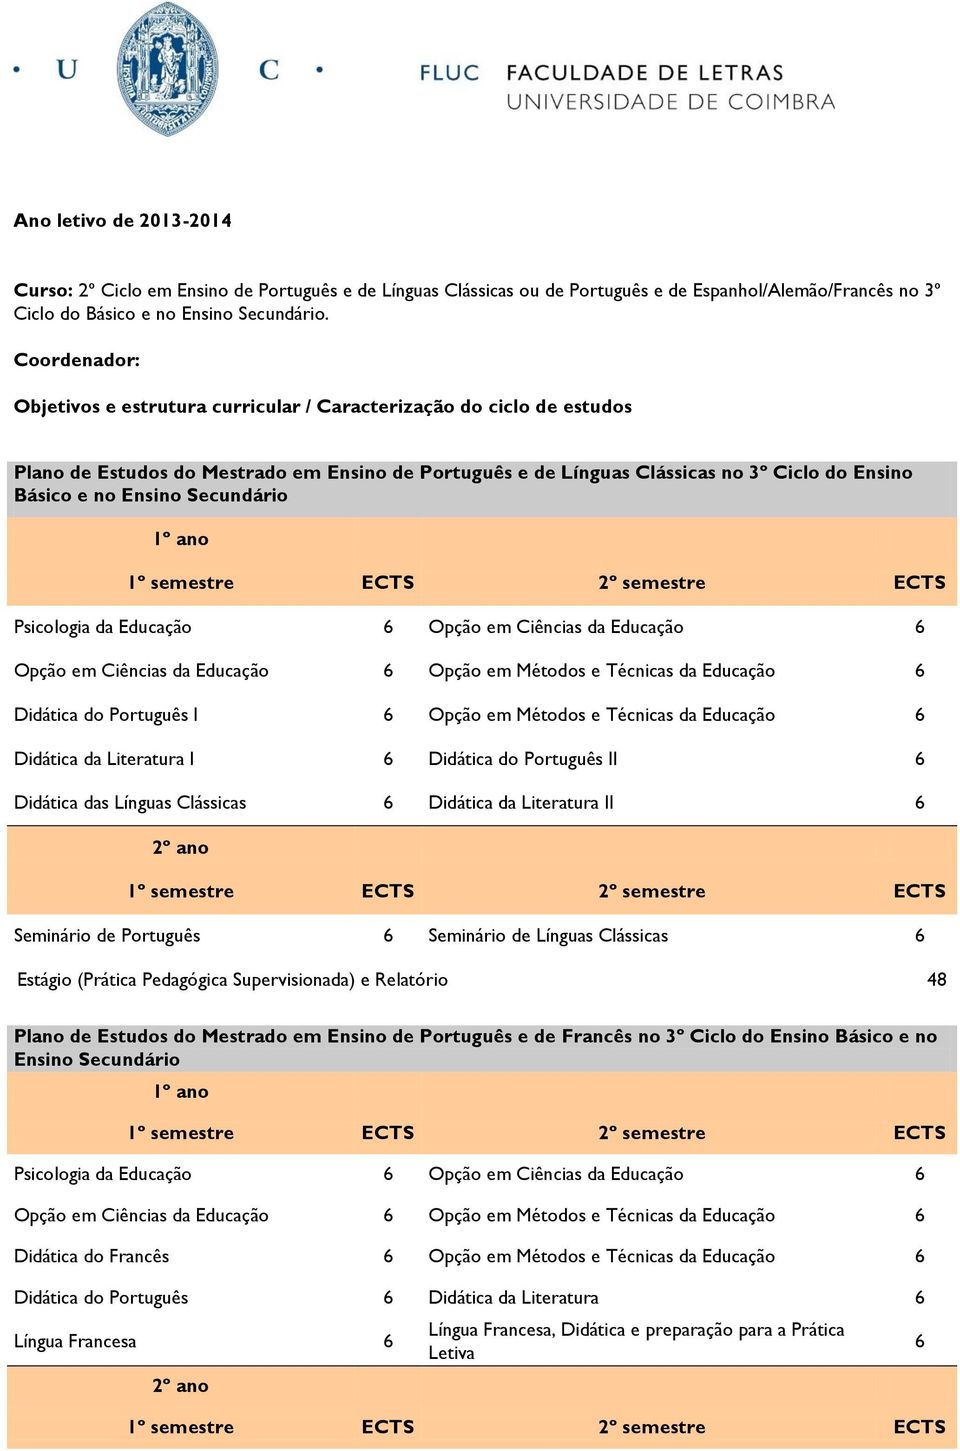 Didática do Português I Opção em Métodos e Técnicas da Educação Didática da Literatura I Didática do Português II Didática das Línguas Clássicas Didática da Literatura II Seminário de Português